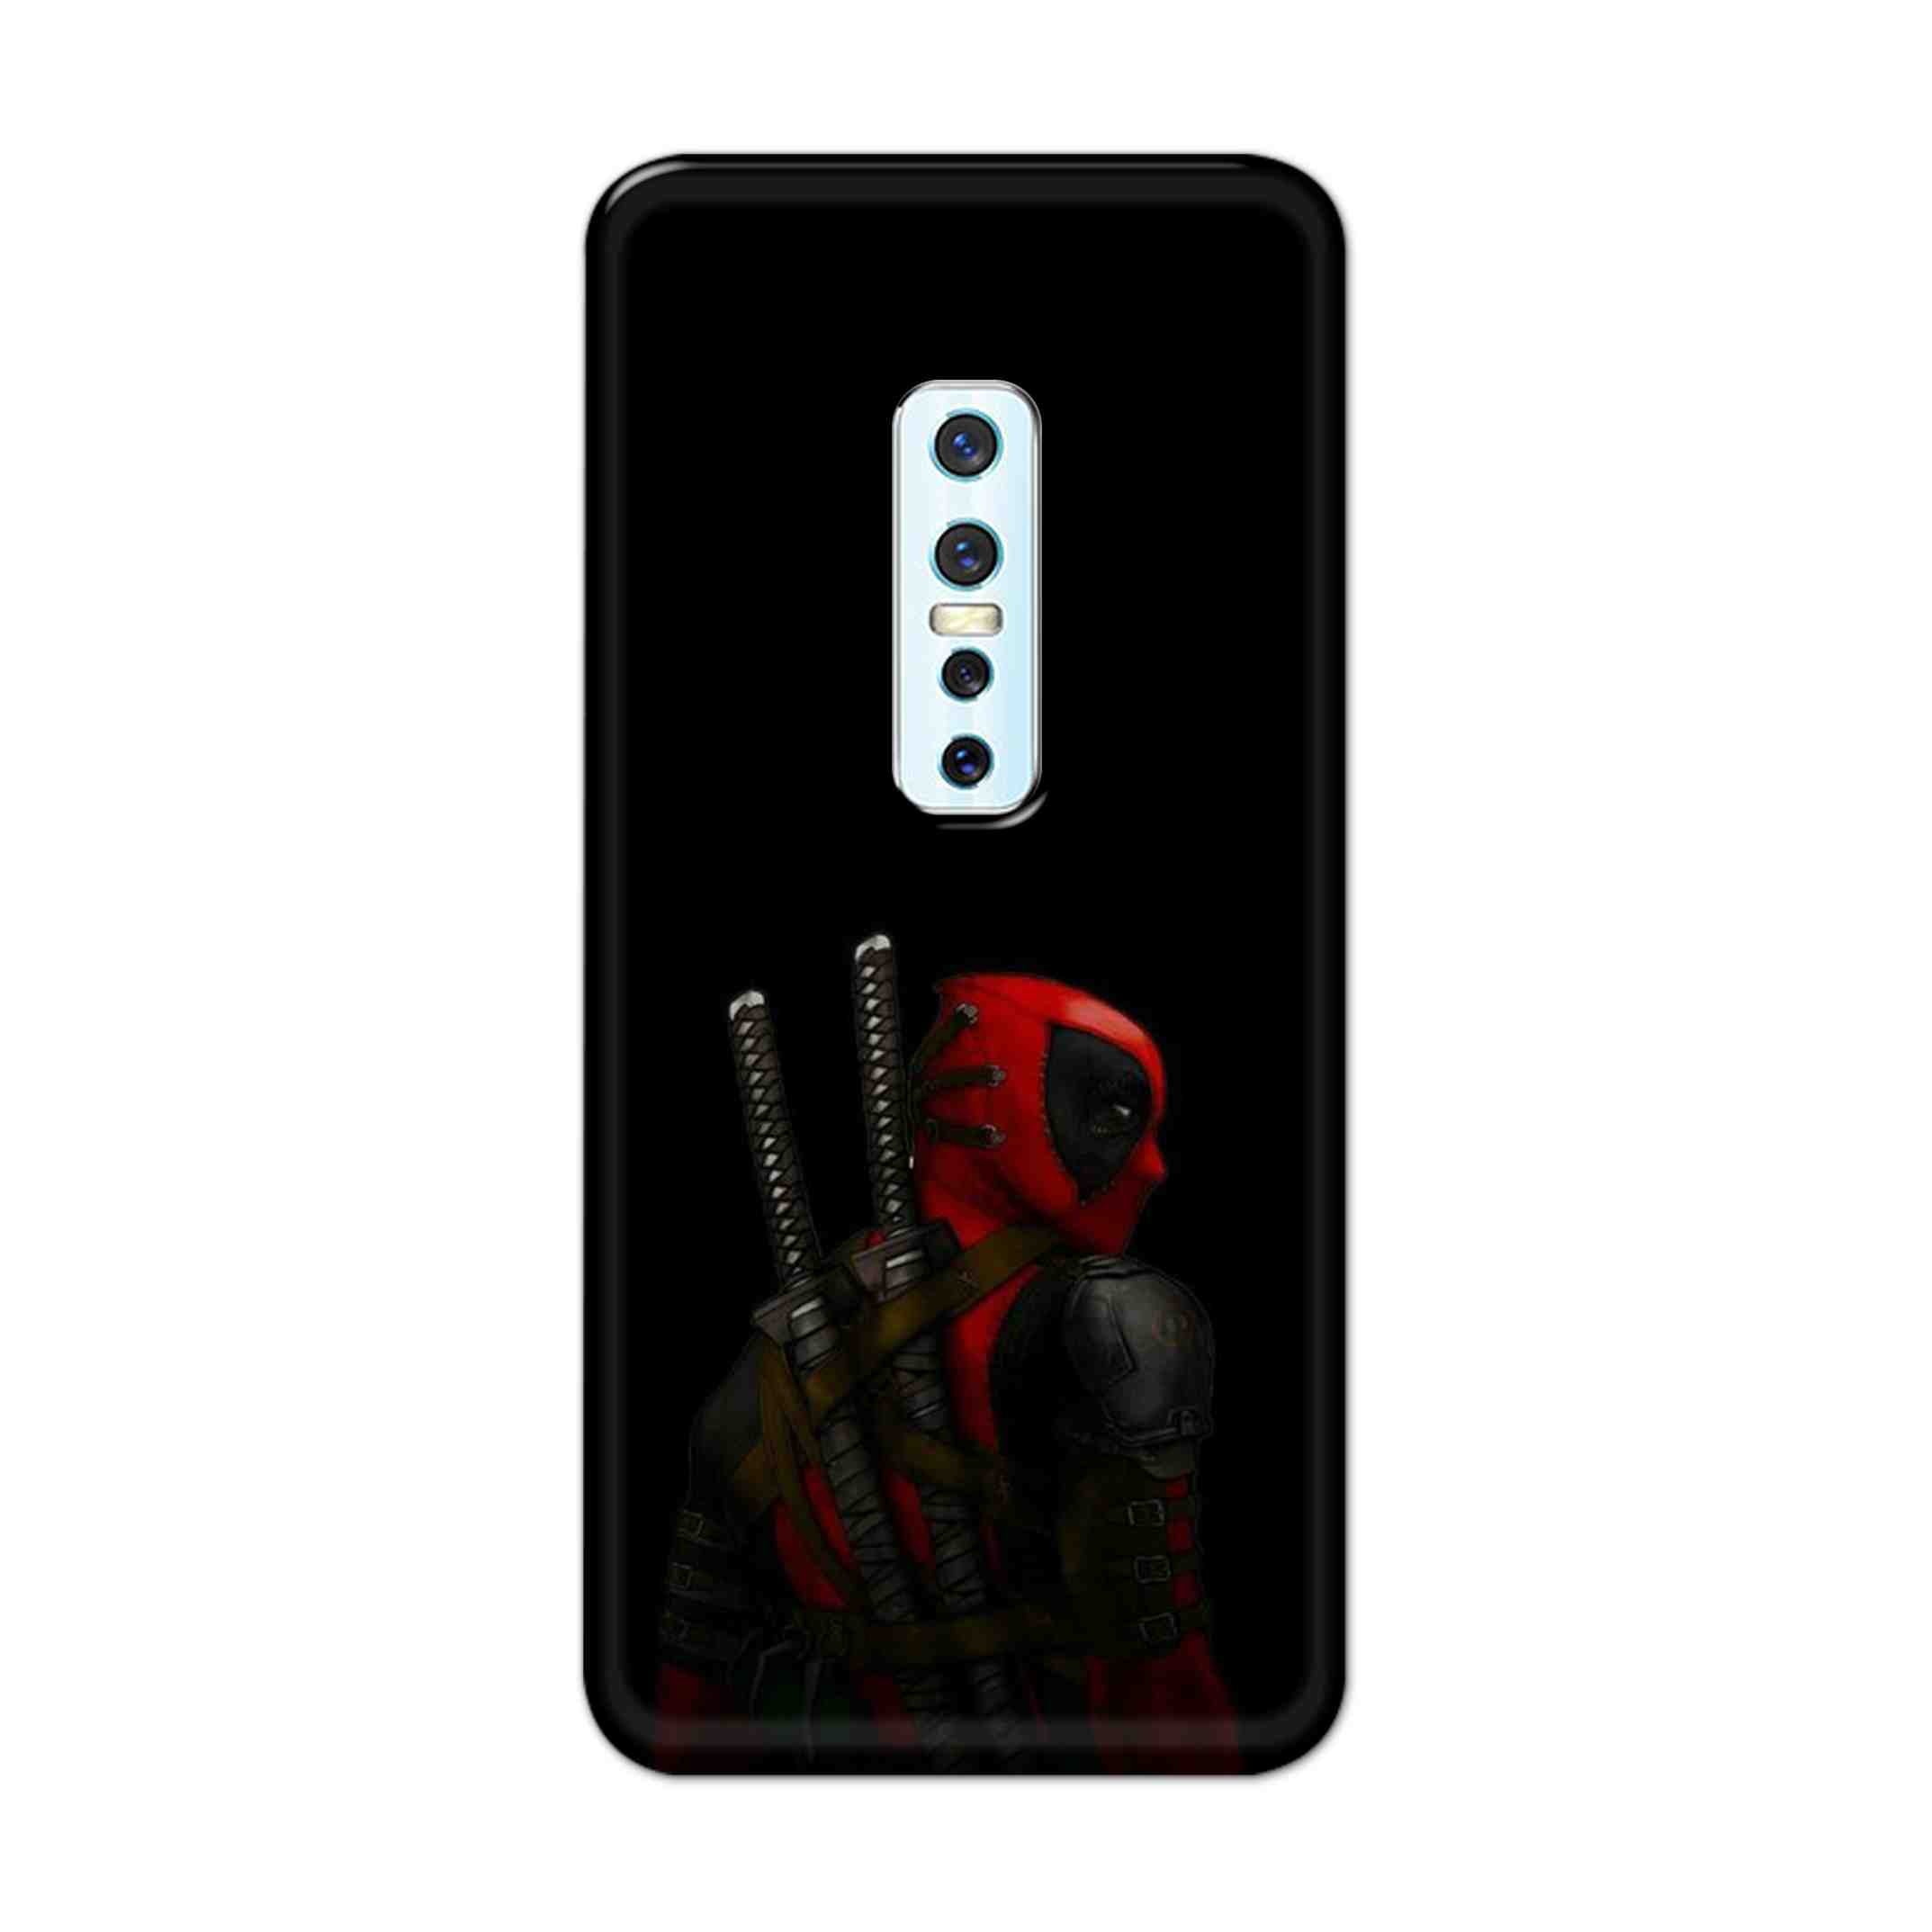 Buy Deadpool Hard Back Mobile Phone Case Cover For Vivo V17 Pro Online